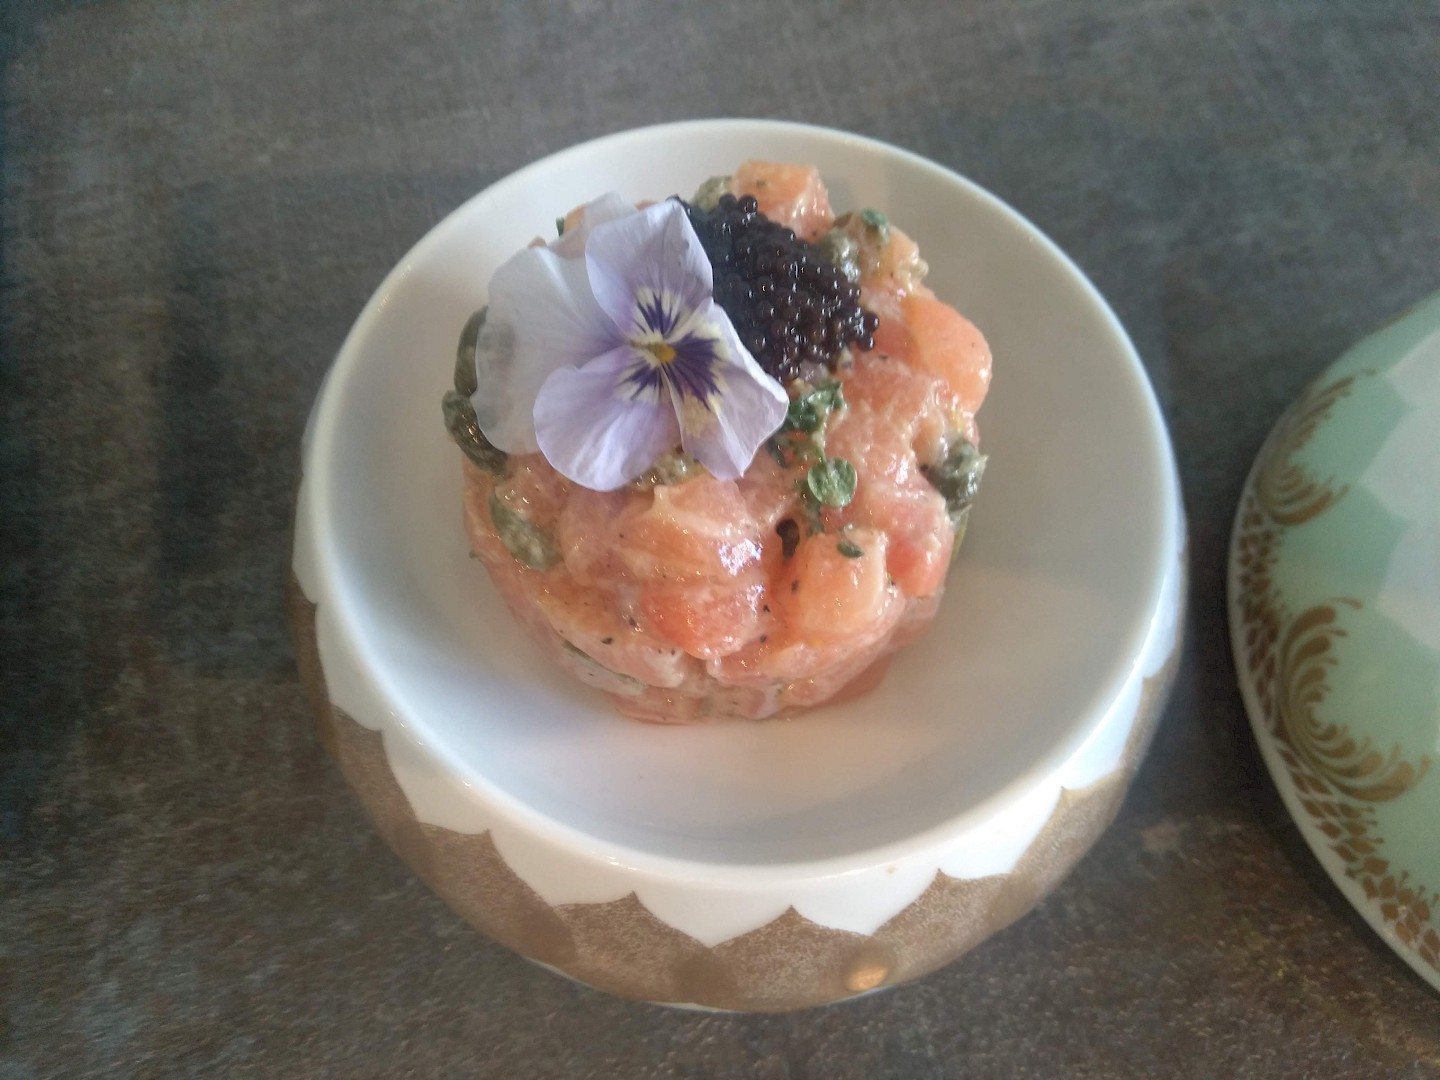 Ein Schälchen mit einem Türmchen Lachstartar dekoriert mit Kaviar und einer Veilchenblüte.